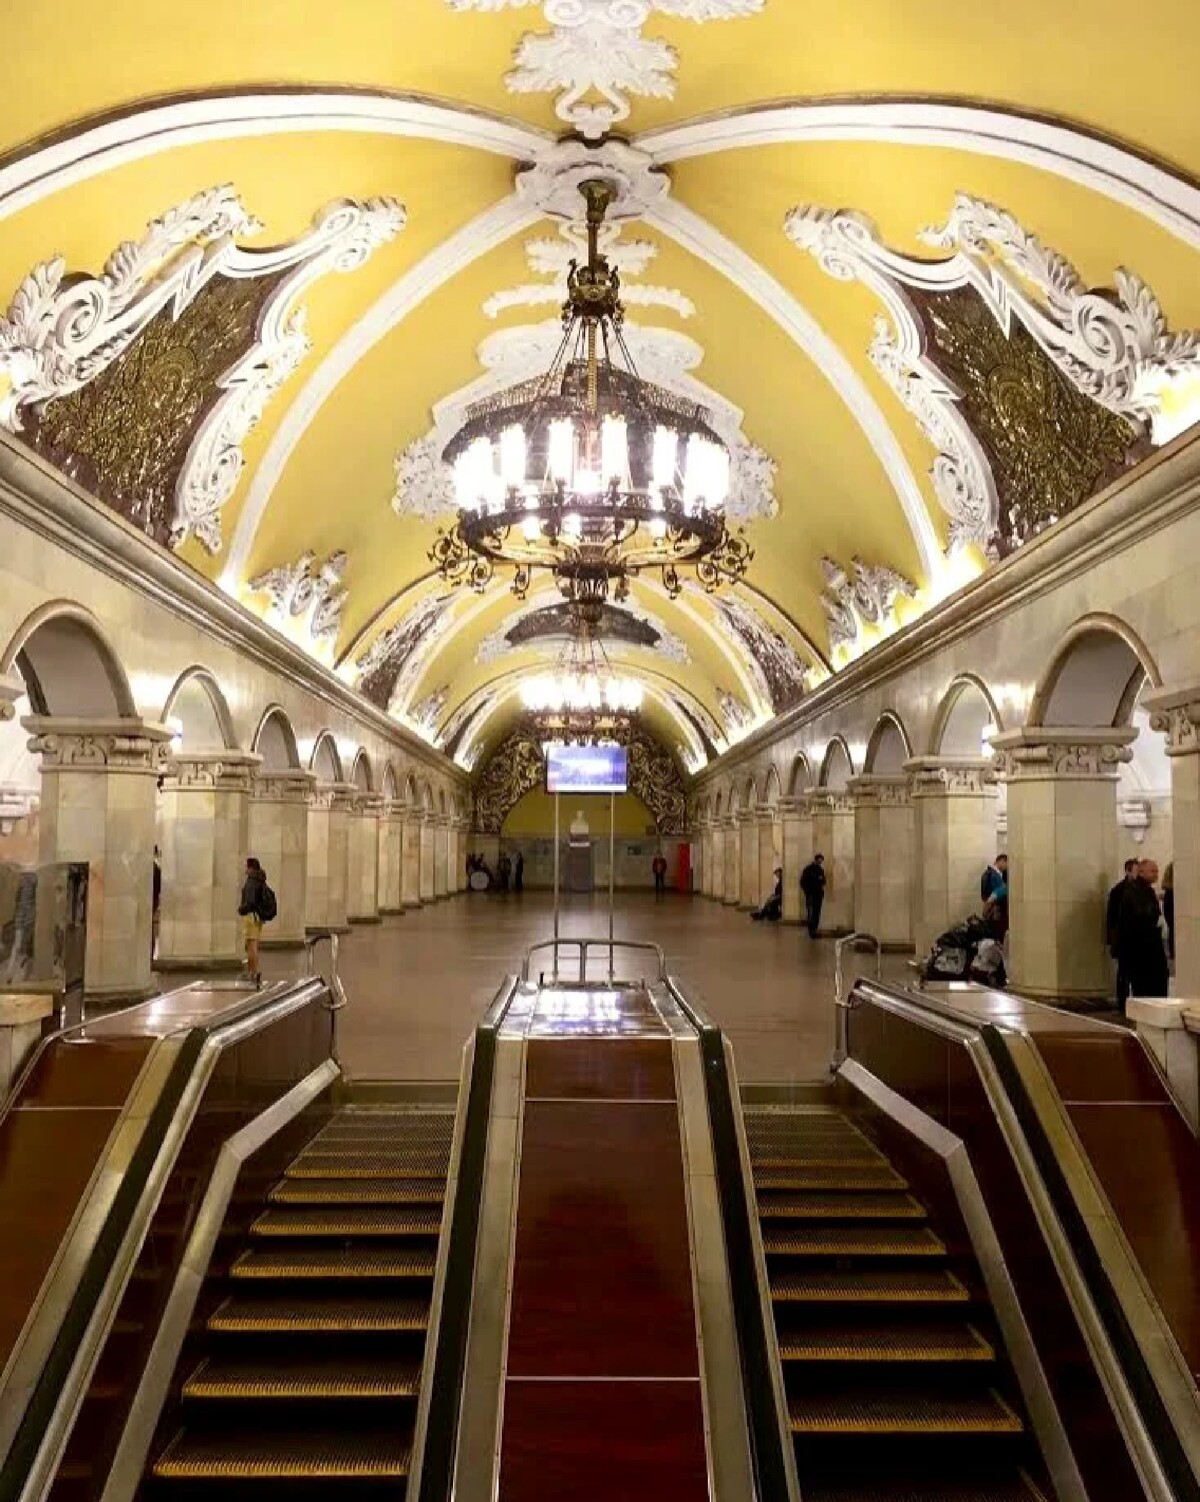 Самые красивые станции метро в москве список с фото